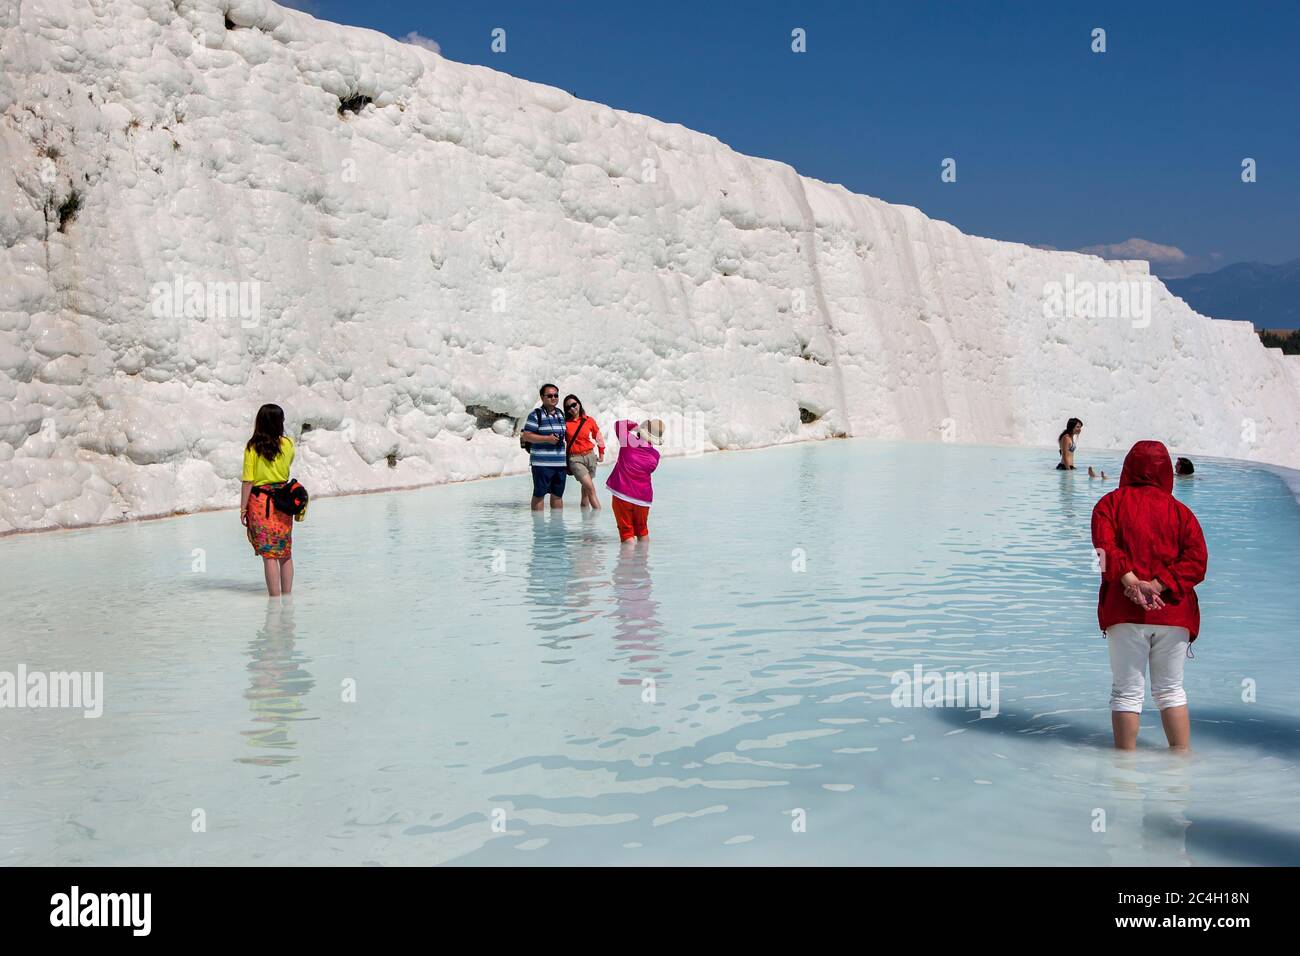 La gente se encuentra en una de las piscinas termales en los travertinos, o el castillo de algodón, en Pamukkale en Turquía. Foto de stock